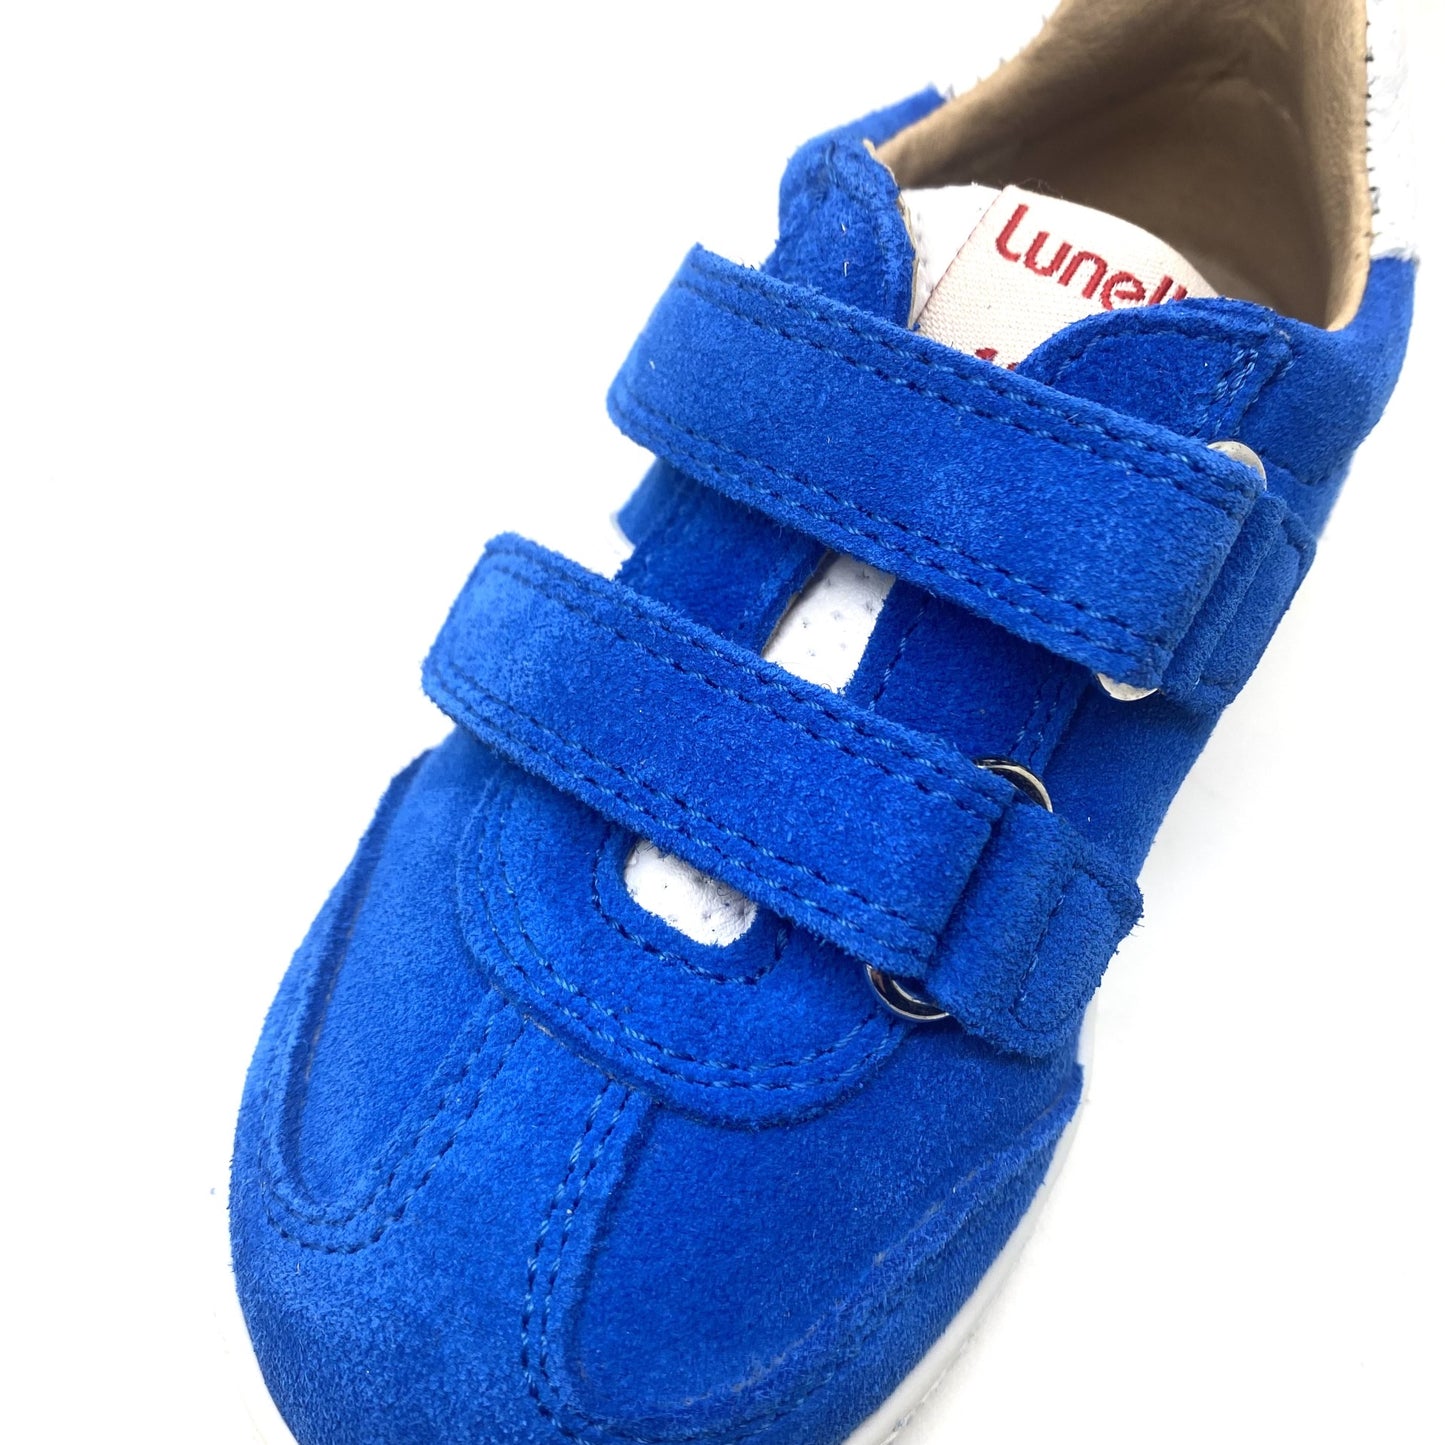 Lunella lage sneaker fel blauw met velcro.